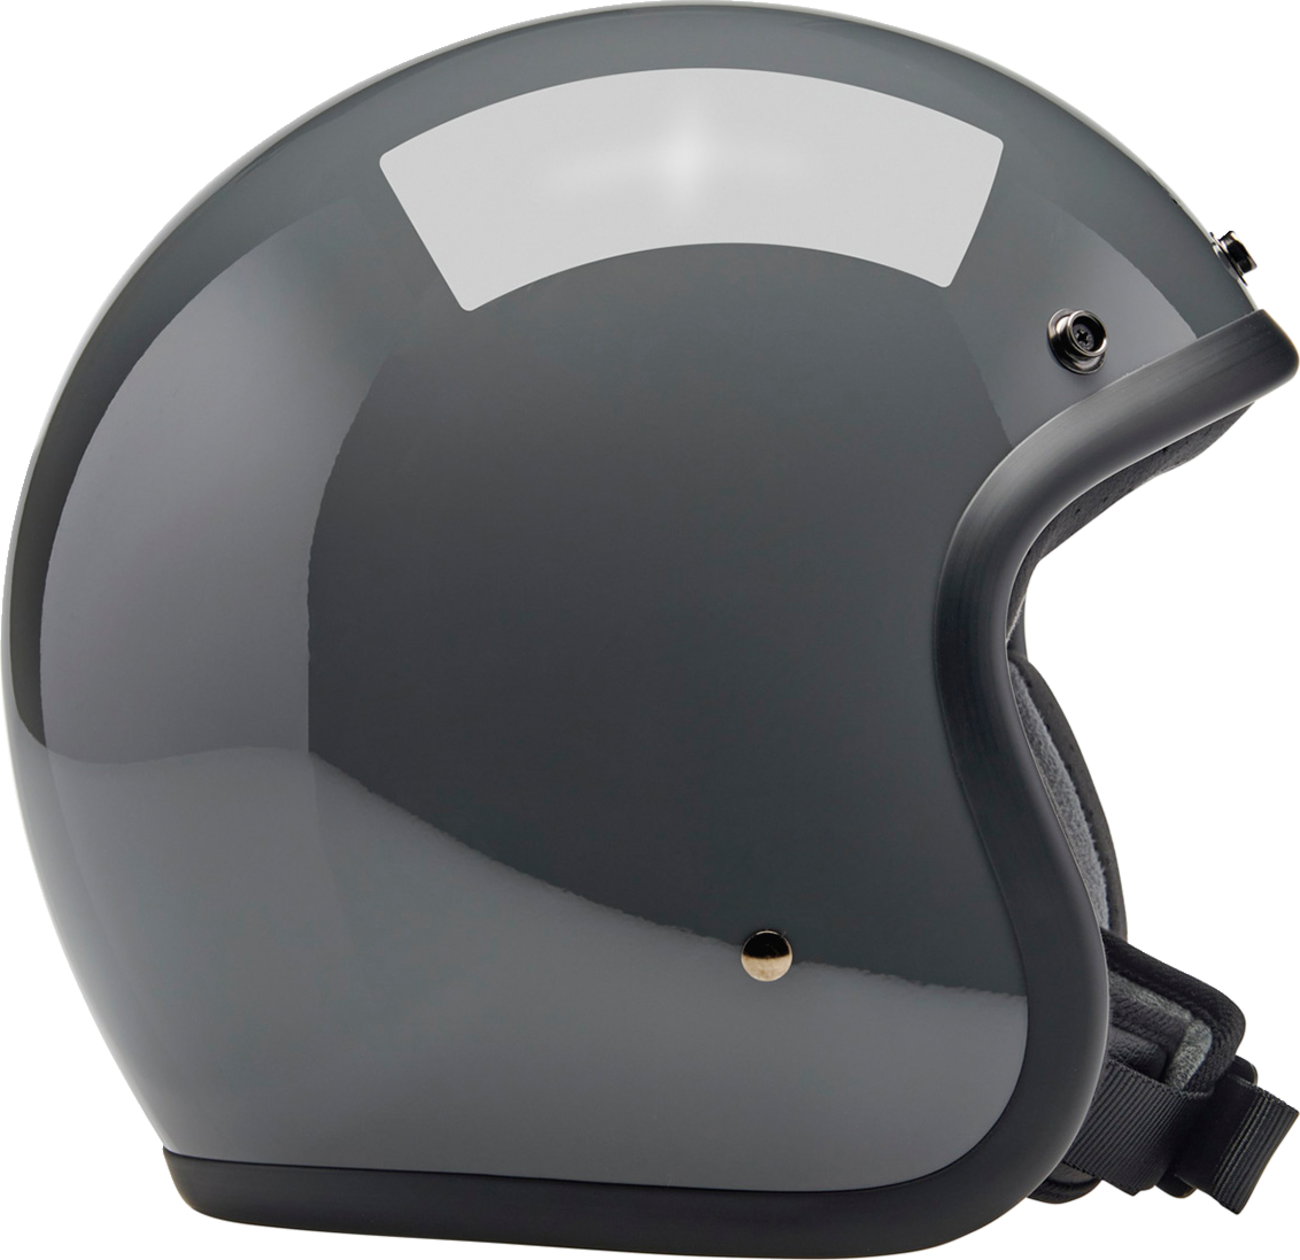 BILTWELL Bonanza Helmet - Gloss Storm Gray - Medium 1001-165-203